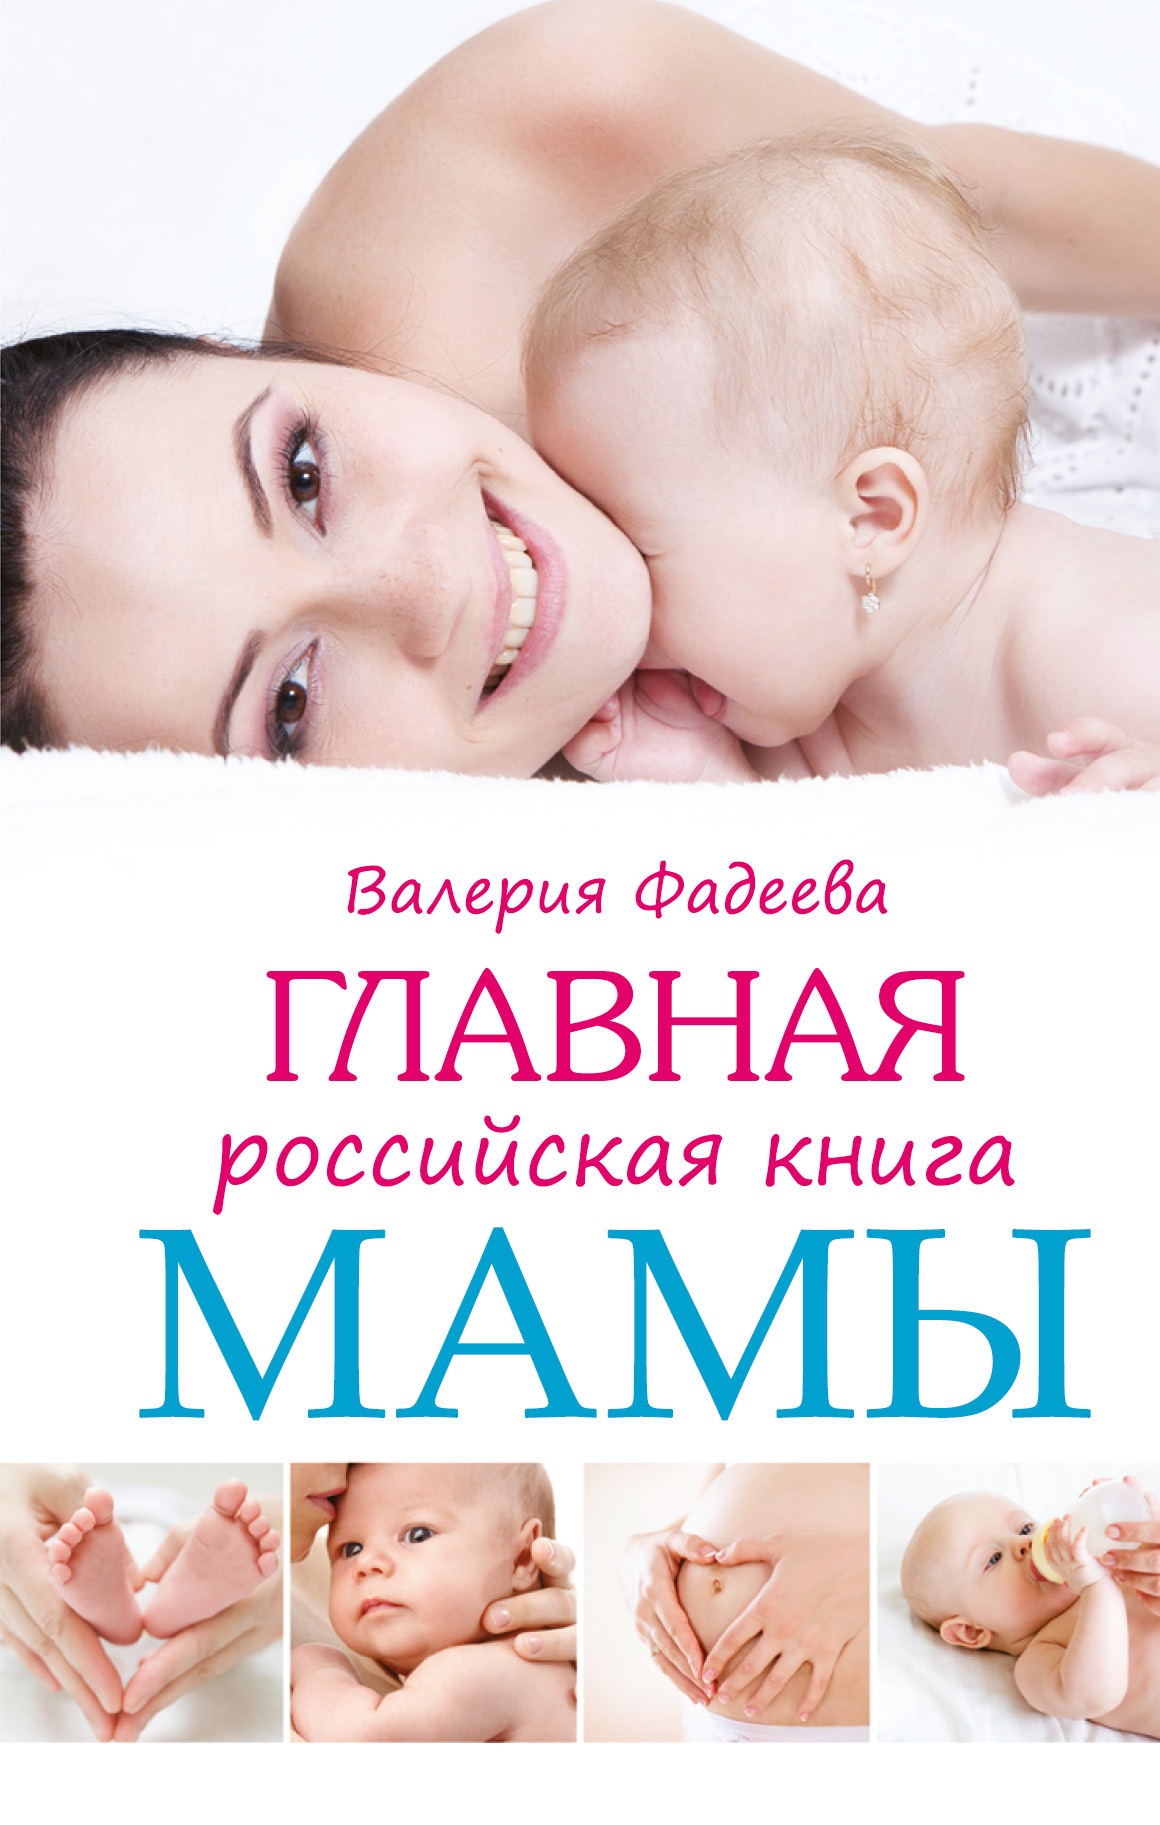 Главная российская книга мамы